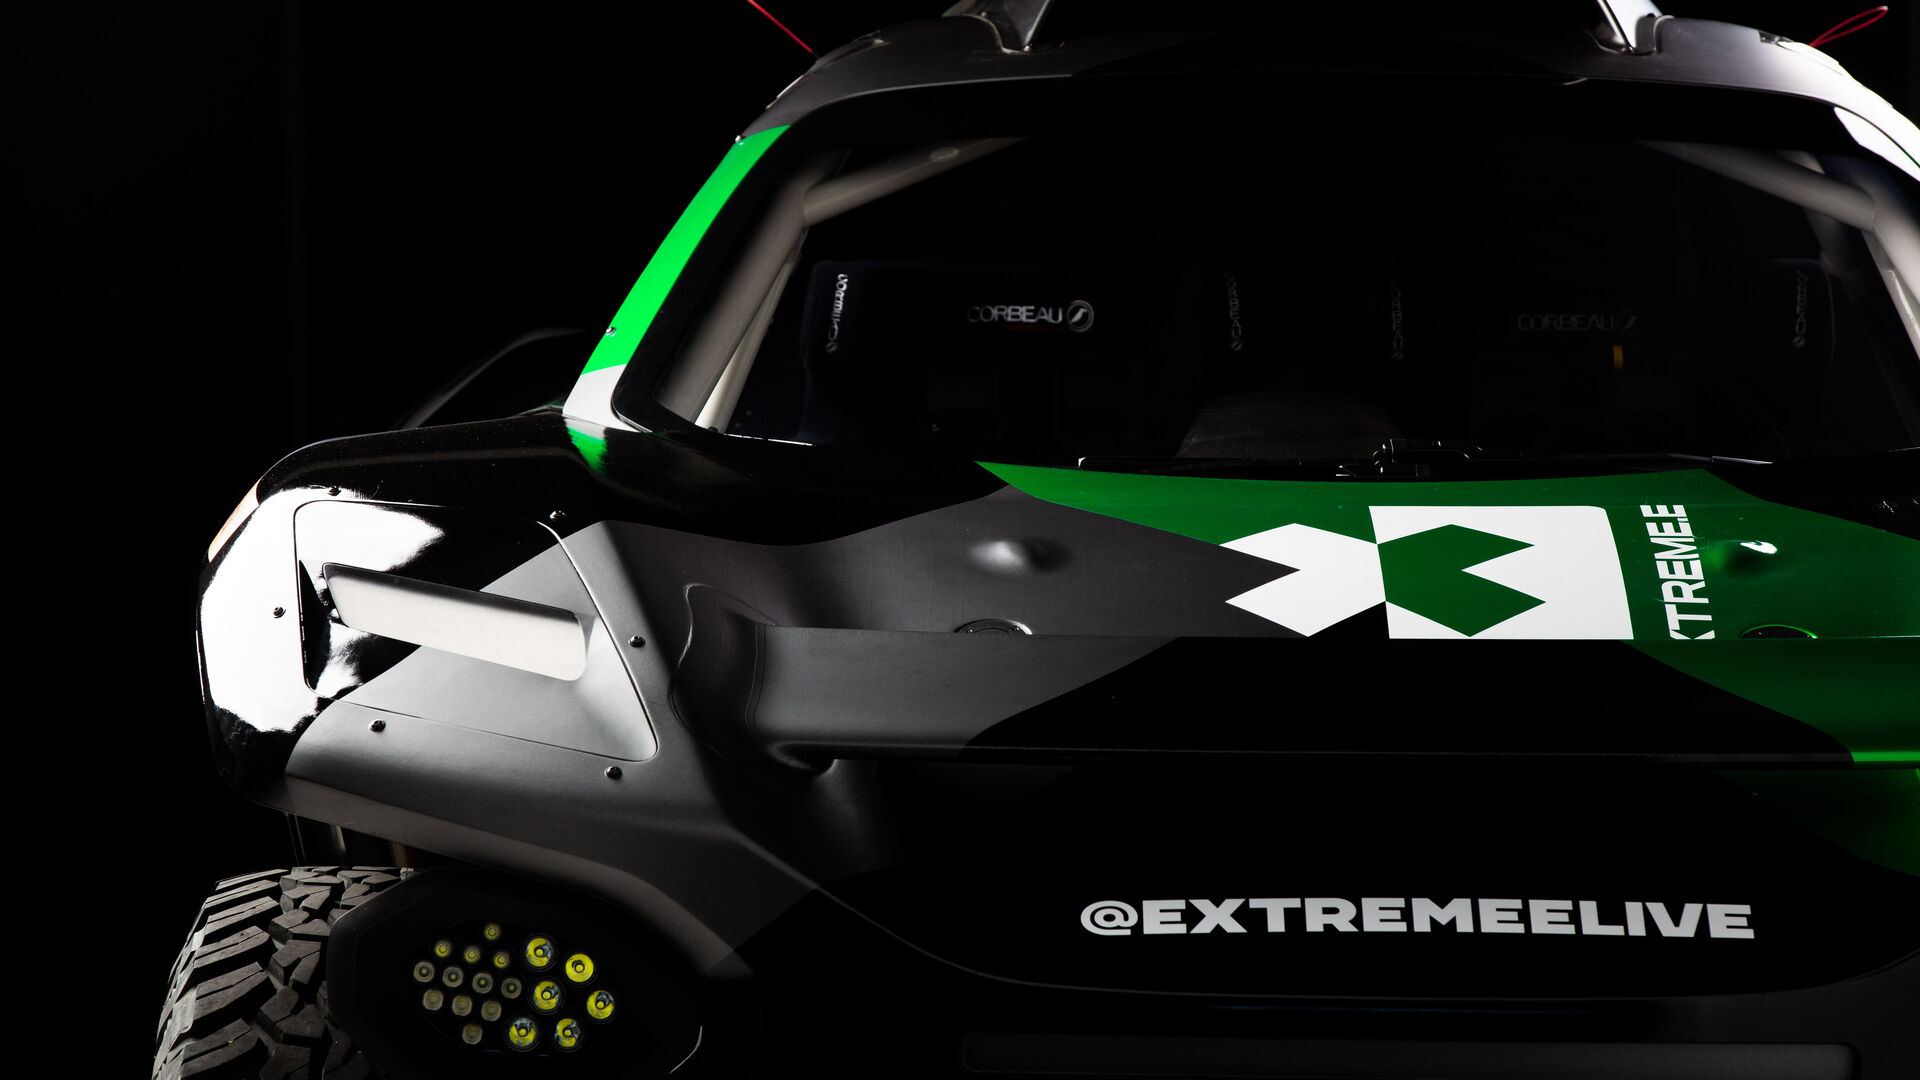 Extreme X: i particolari tecnici della vettura Extreme E del team Odyssey 21 al chiuso